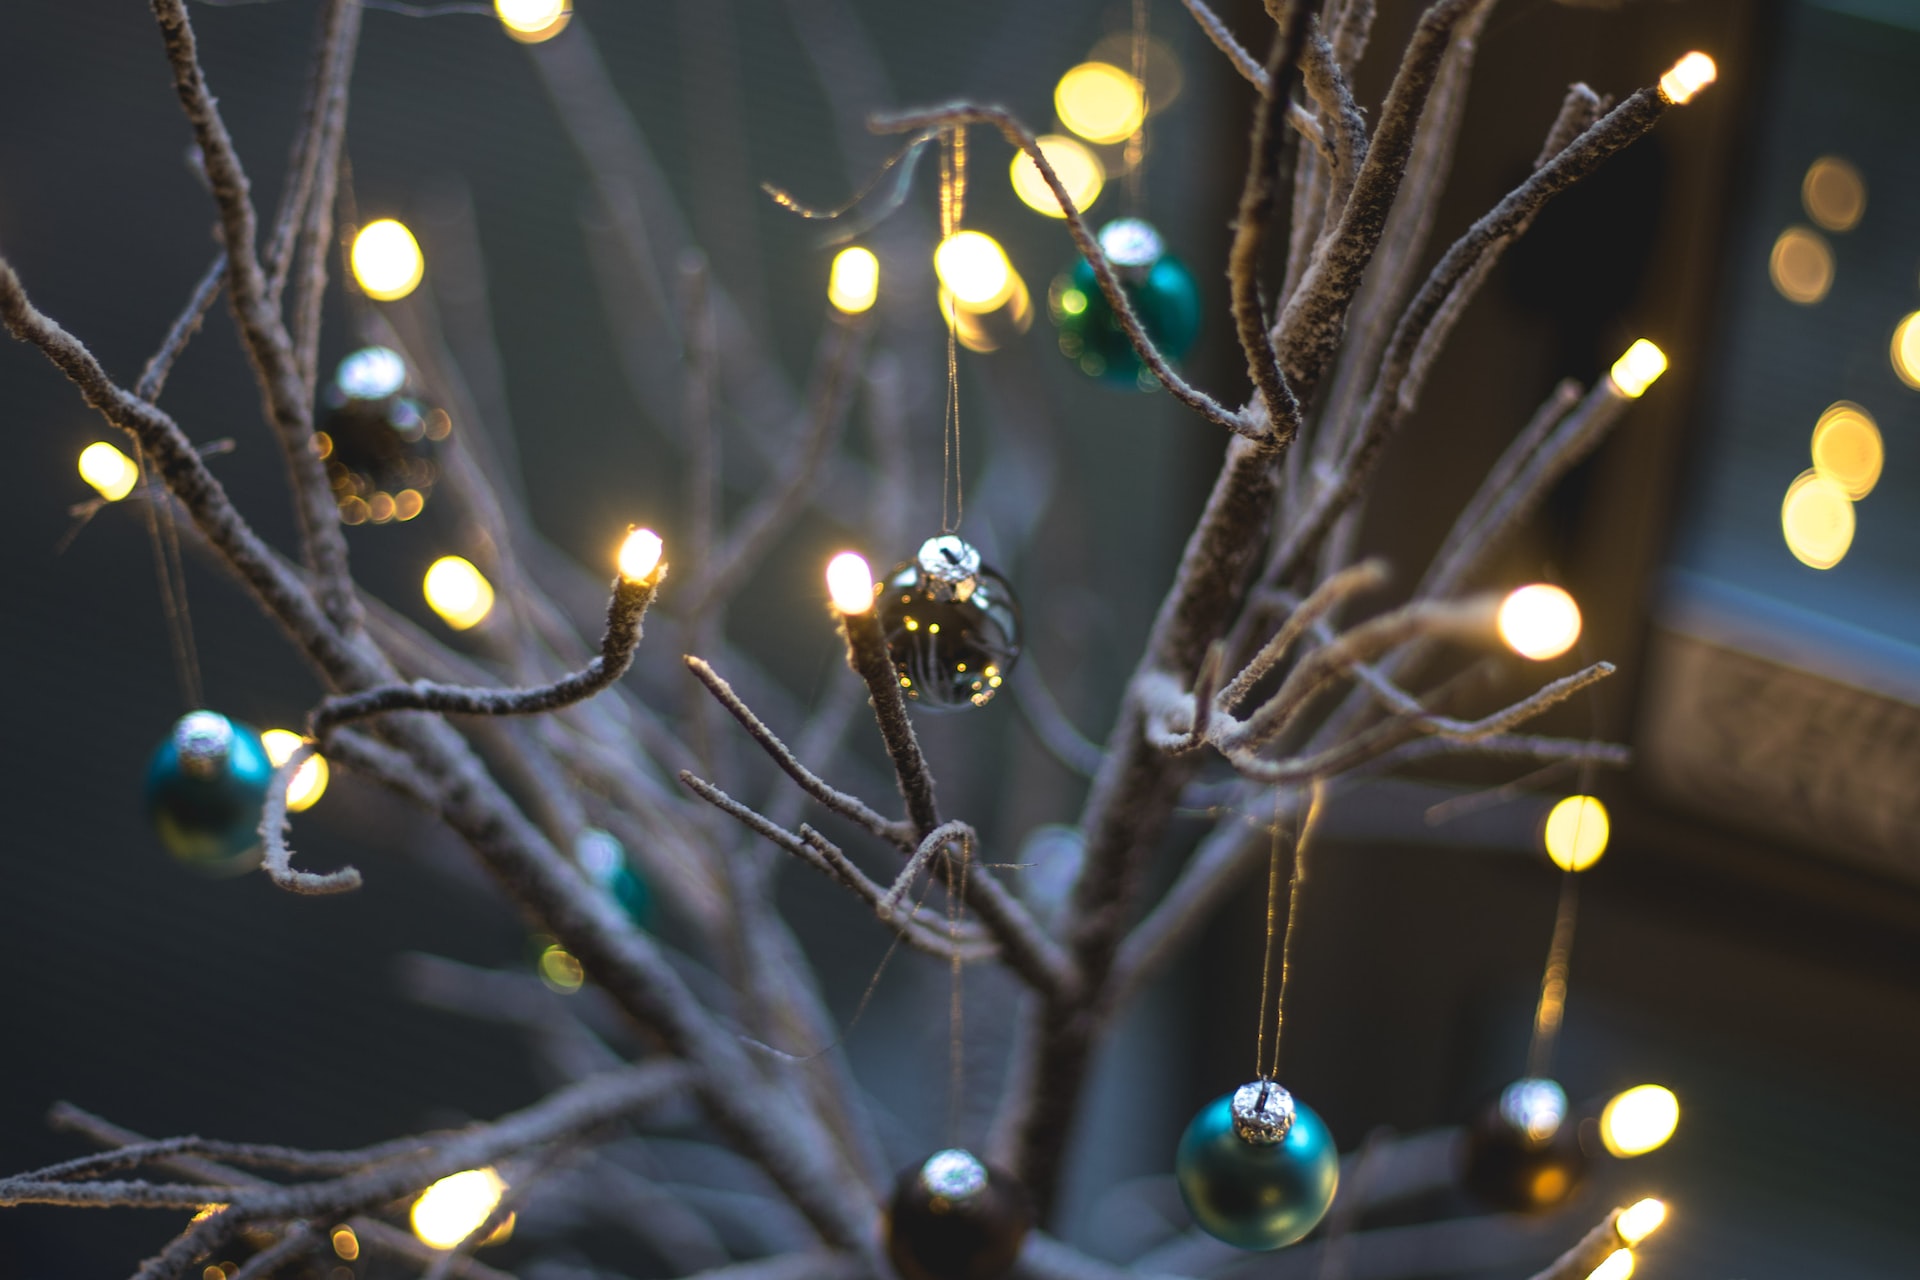 Μην πετάς τα παλιά χριστουγεννιάτικα λαμπάκια- 5 οικολογικοί τρόποι για να τα αξιοποιήσεις